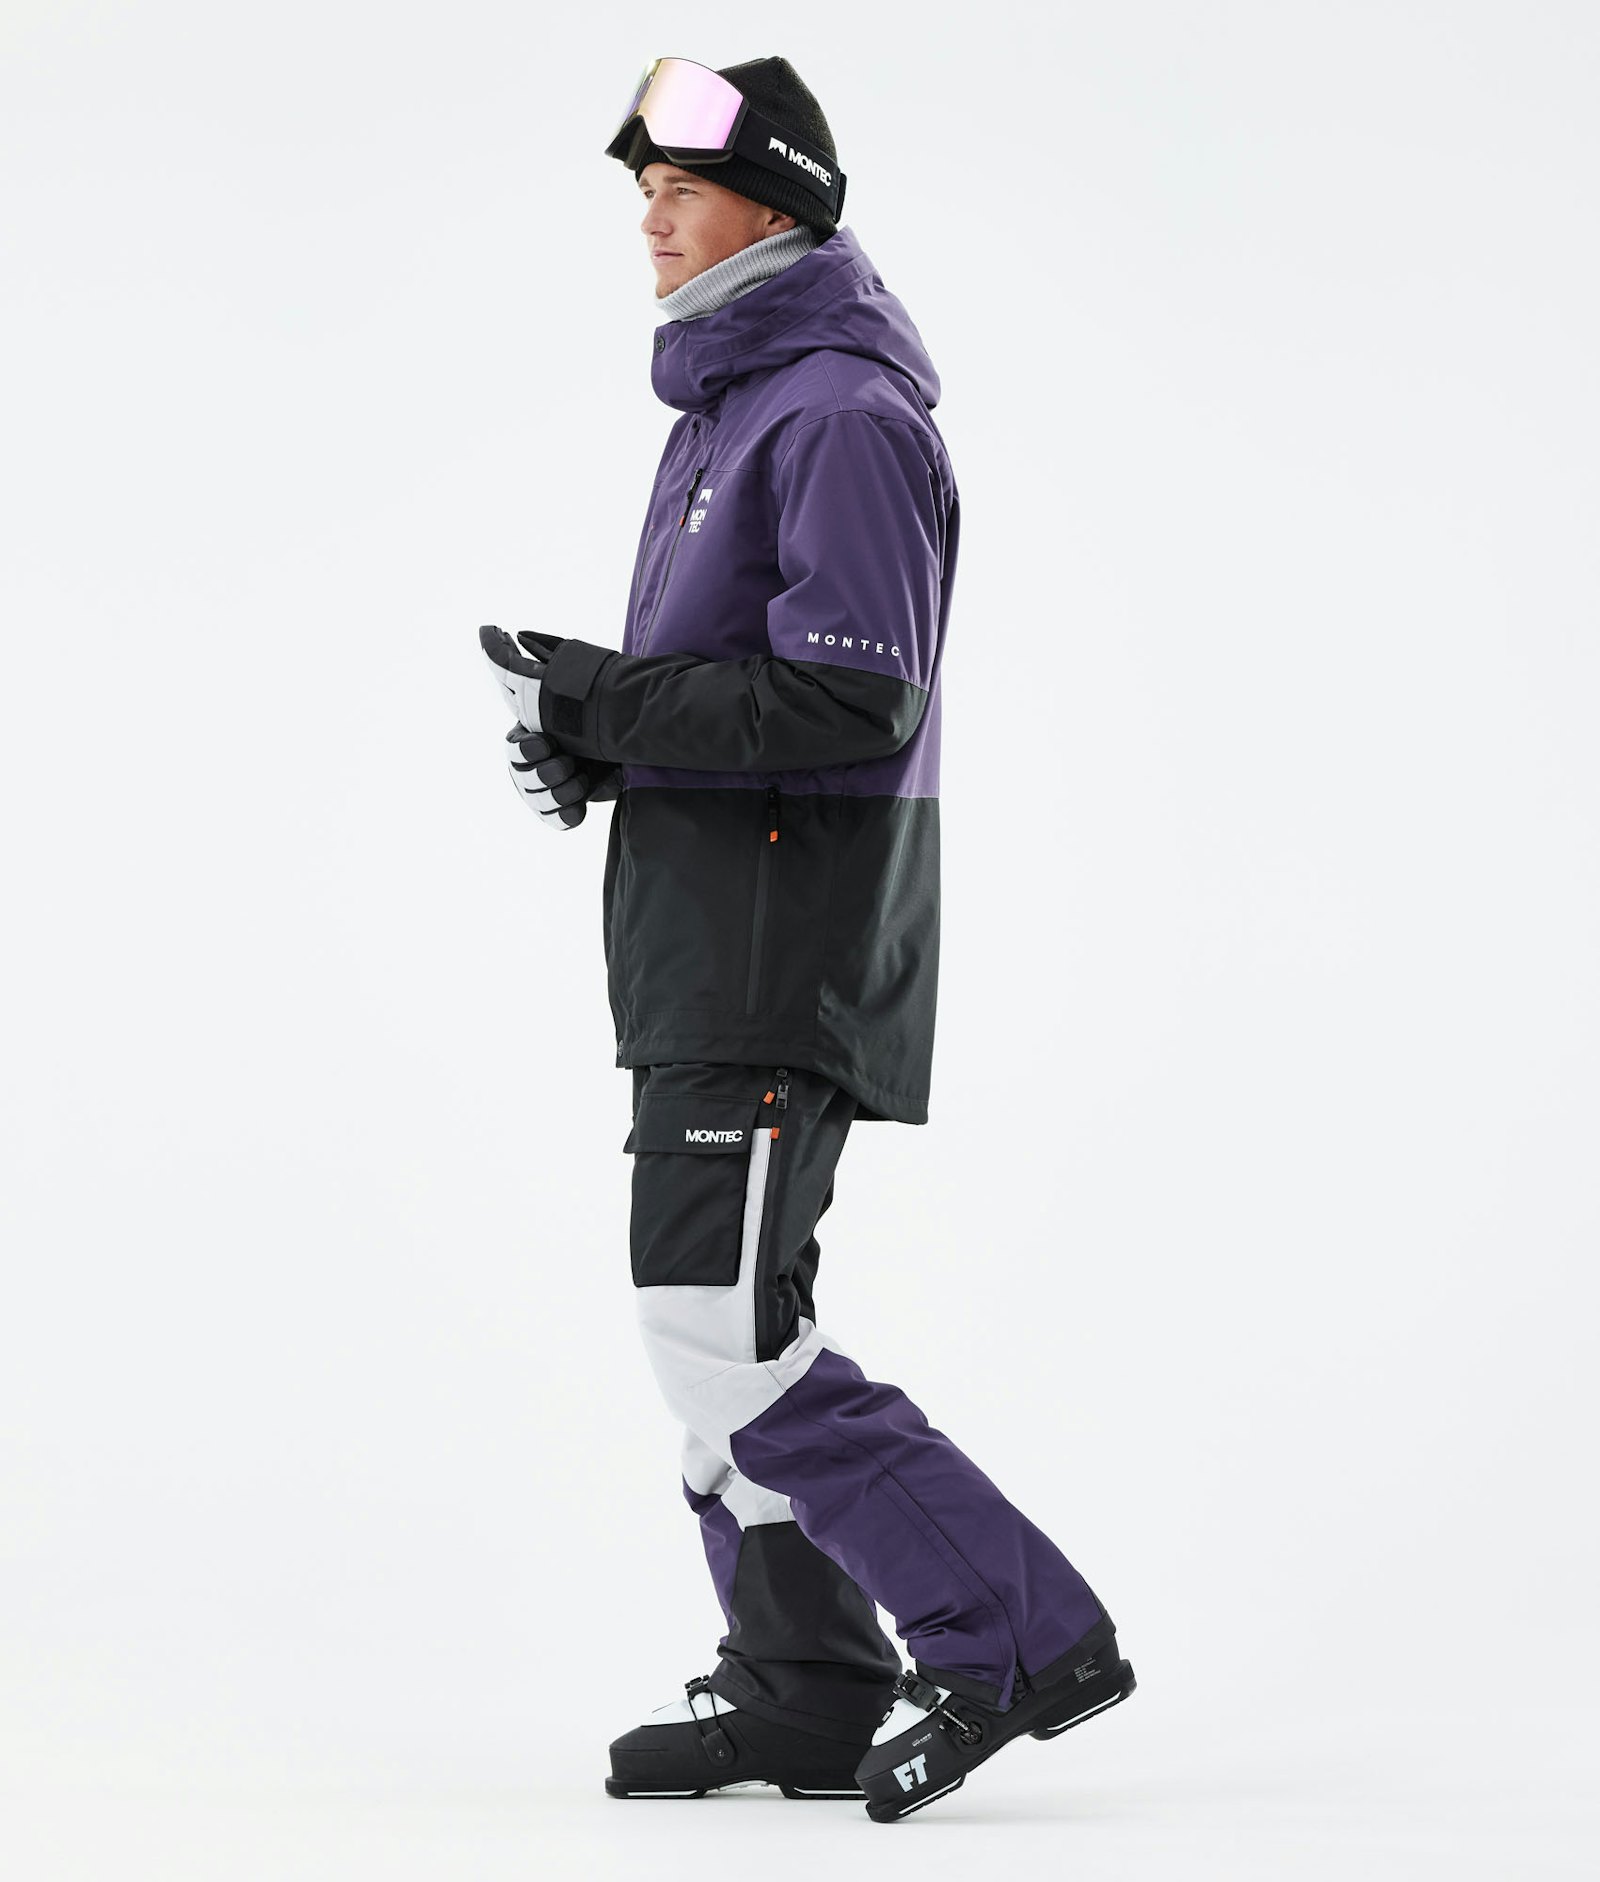 Fawk 2021 Skijakke Herre Purple/Black